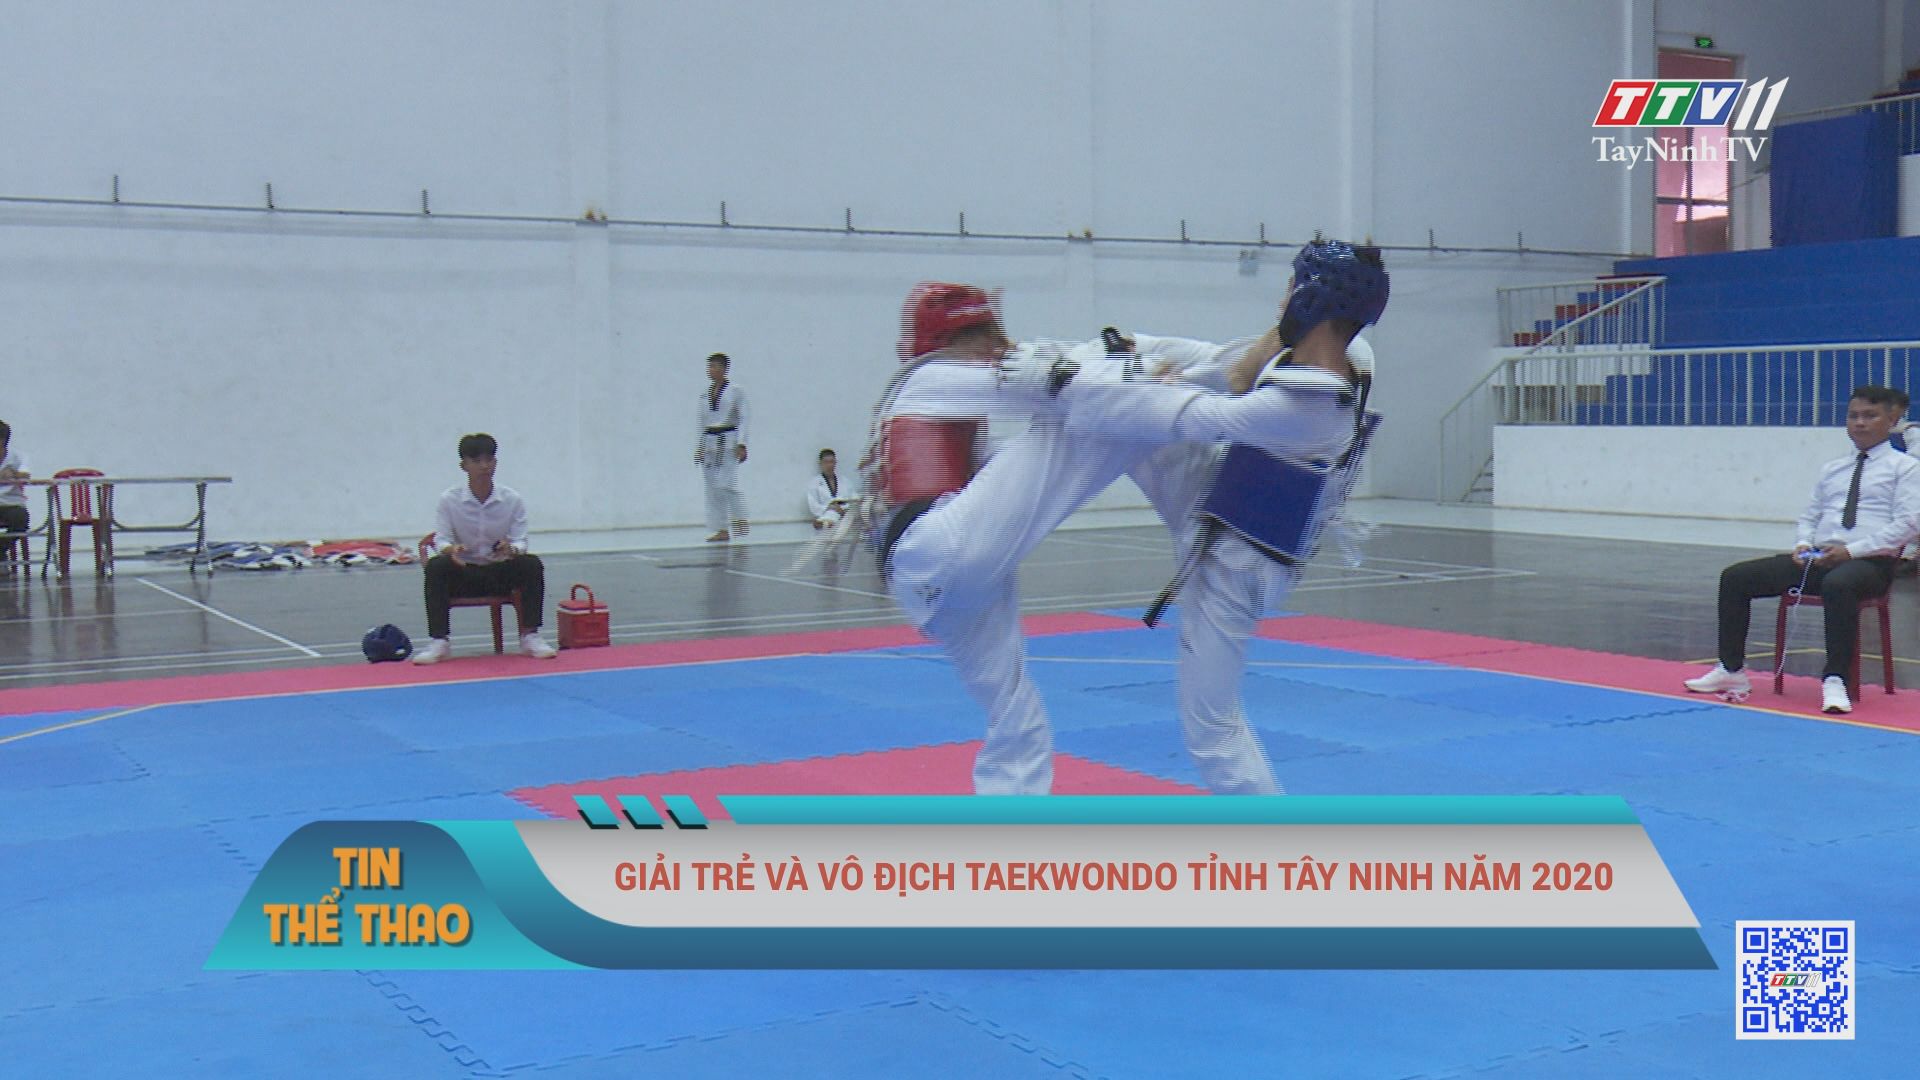 Giải trẻ và vô địch Taekwondo tỉnh Tây Ninh năm 2020 | BẢN TIN THỂ THAO | TayNinhTV 